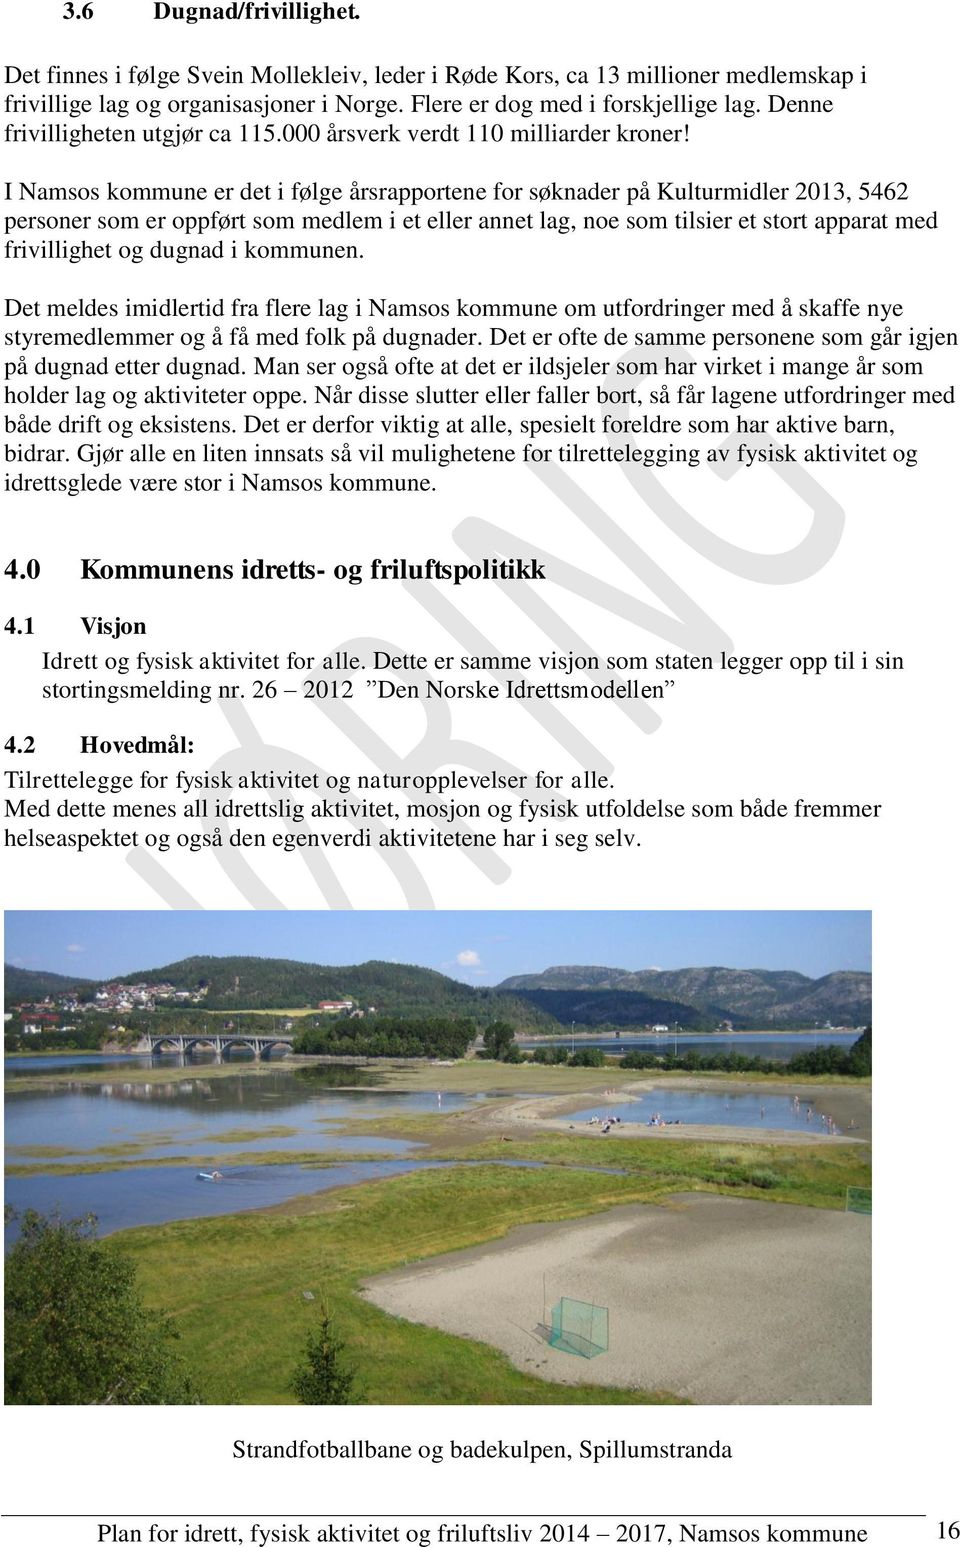 I Namsos kommune er det i følge årsrapportene for søknader på Kulturmidler 2013, 5462 personer som er oppført som medlem i et eller annet lag, noe som tilsier et stort apparat med frivillighet og